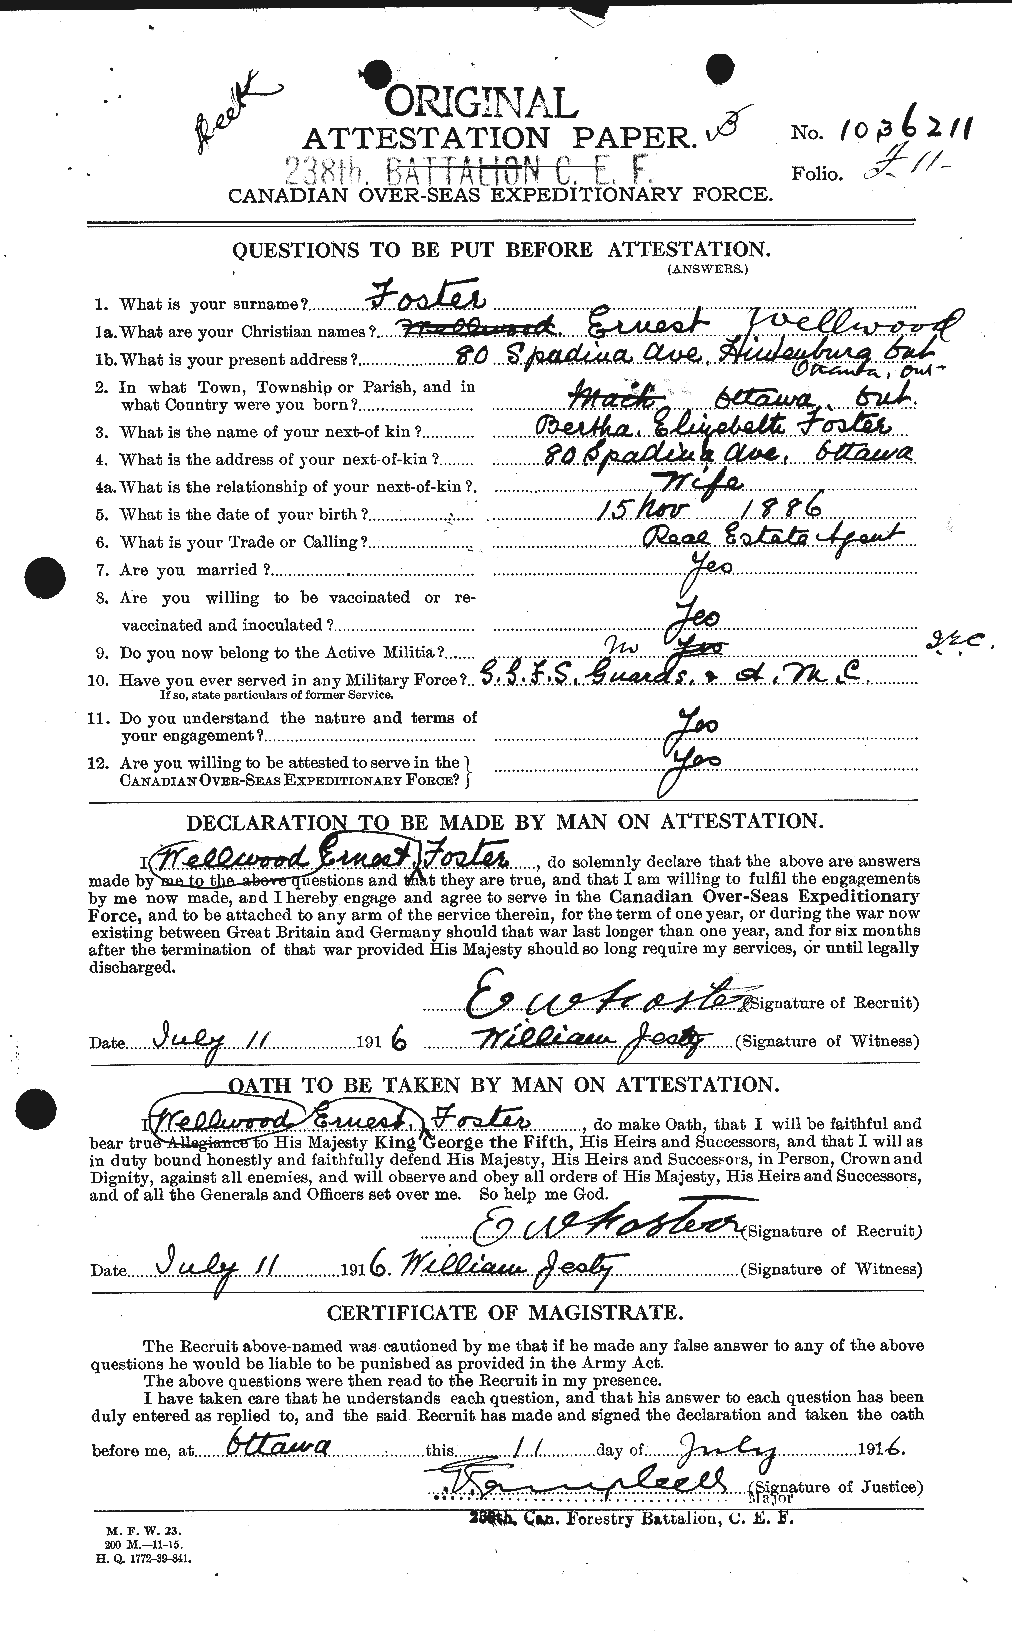 Dossiers du Personnel de la Première Guerre mondiale - CEC 330608a